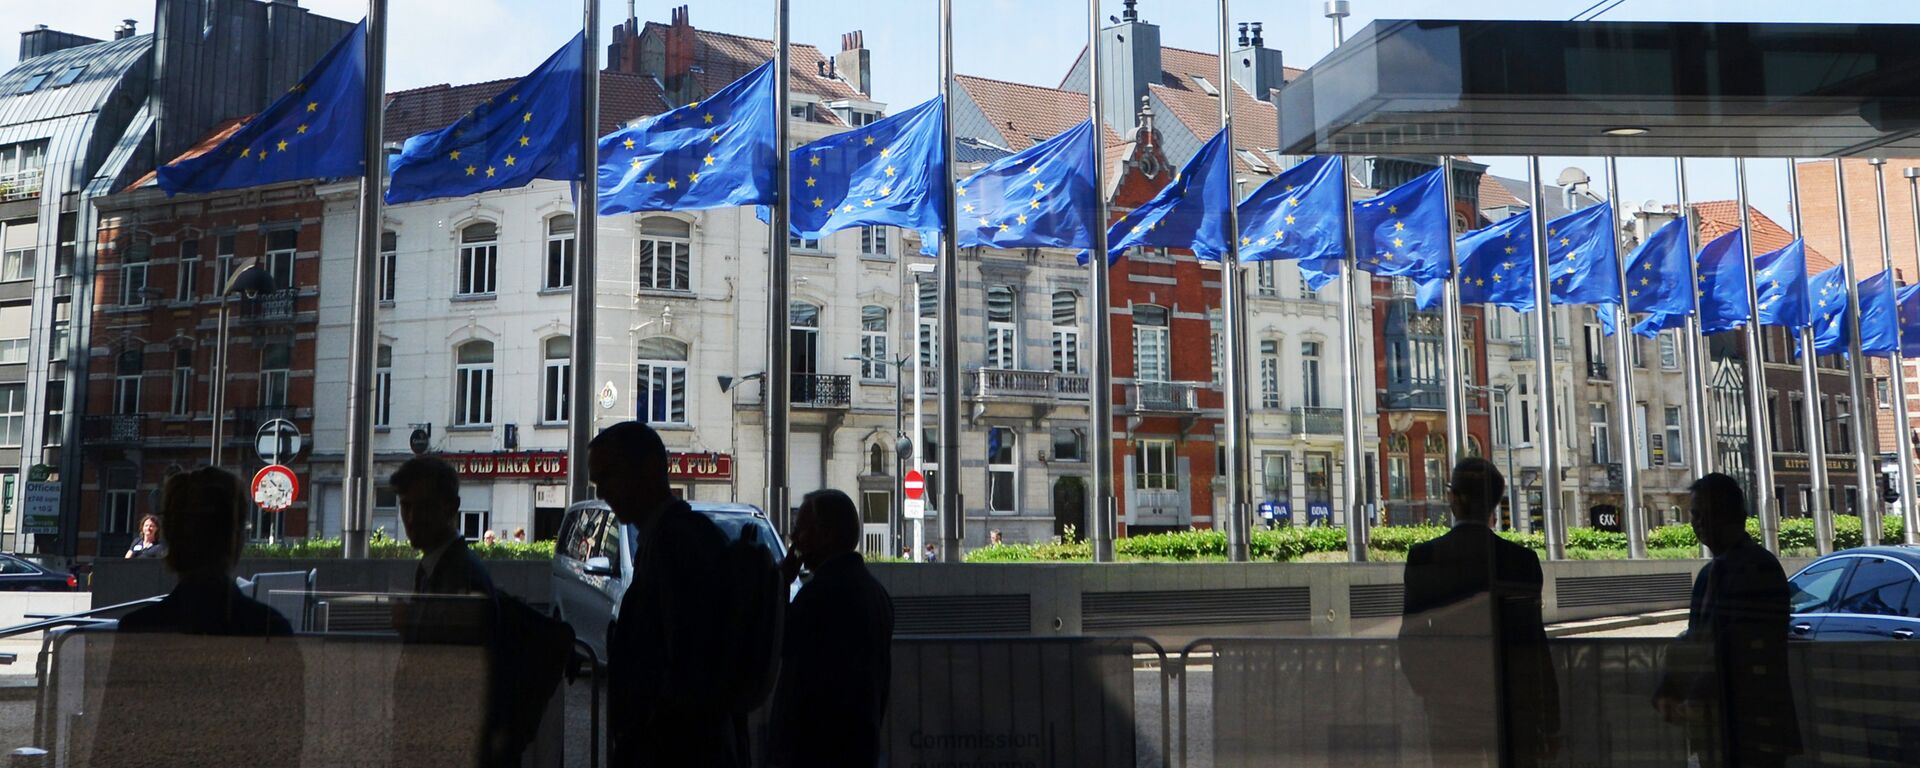 Steagurile UE coborâte în bernă lângă sediul Comisiei Europene după atentatul din Marea Britanie - Sputnik Moldova-România, 1920, 09.05.2021